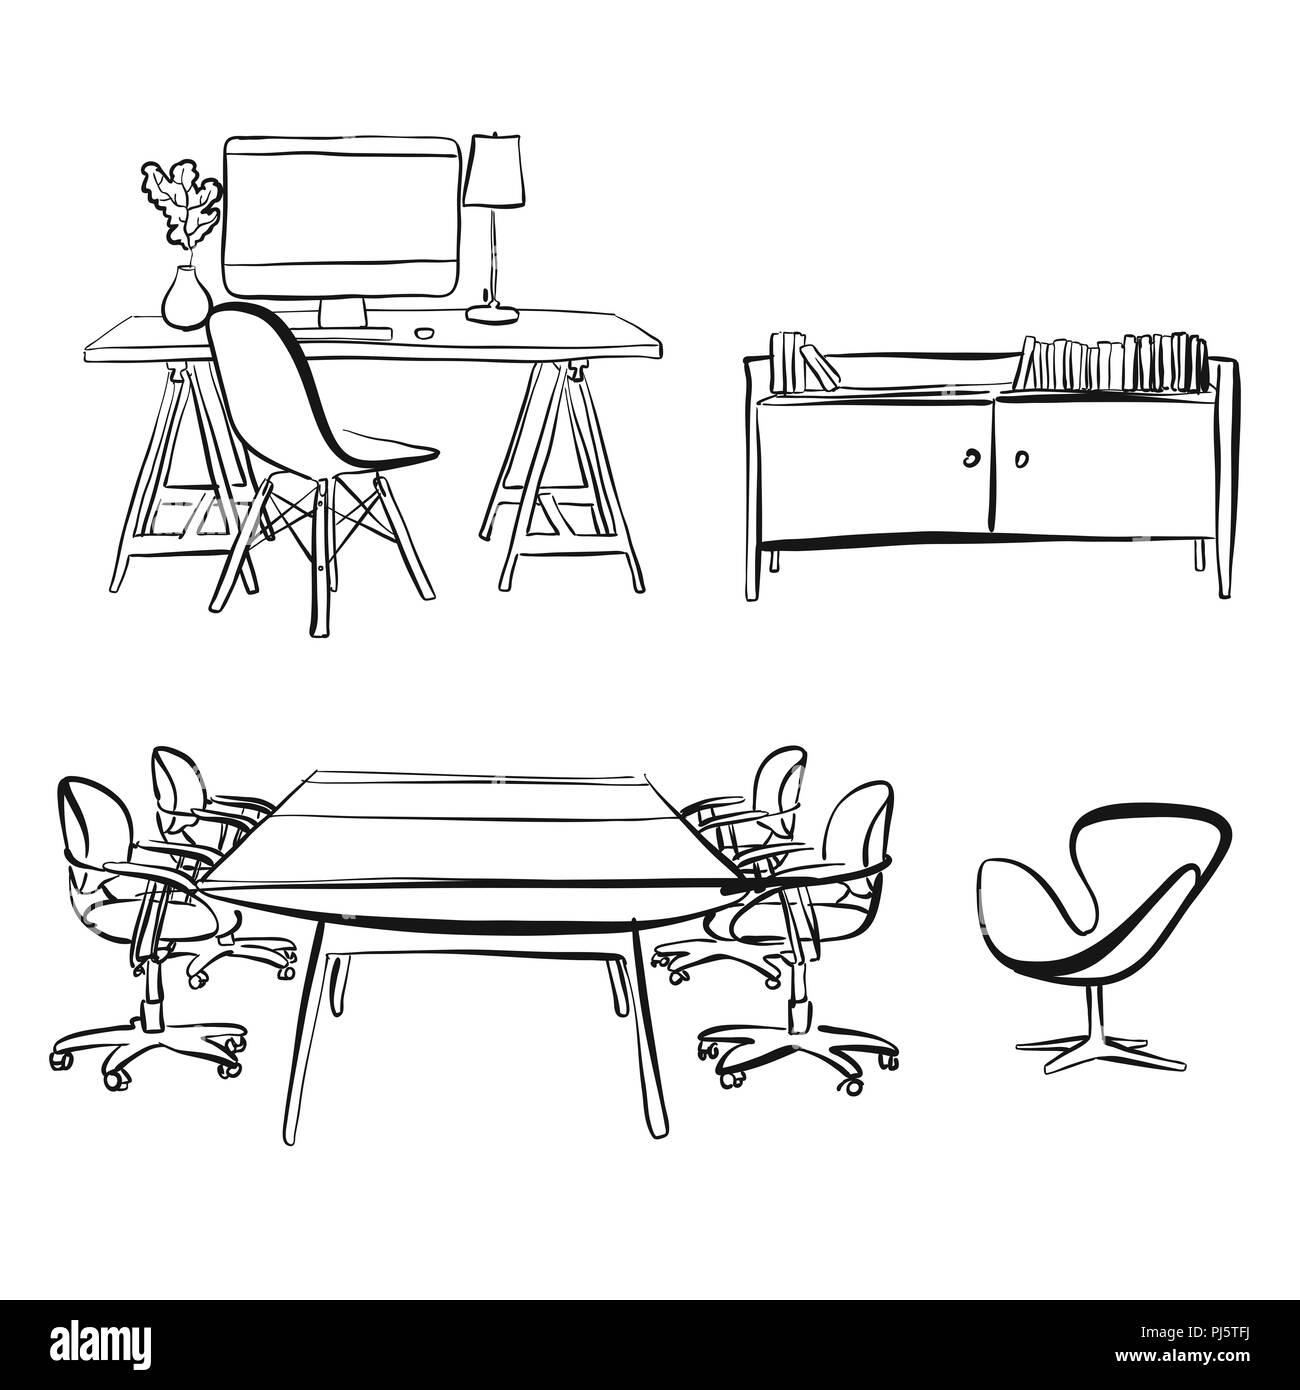 Büro innere Objekte zeichnen. Handgezeichnete vektor Skizze. Business Concept Design. Stockfoto